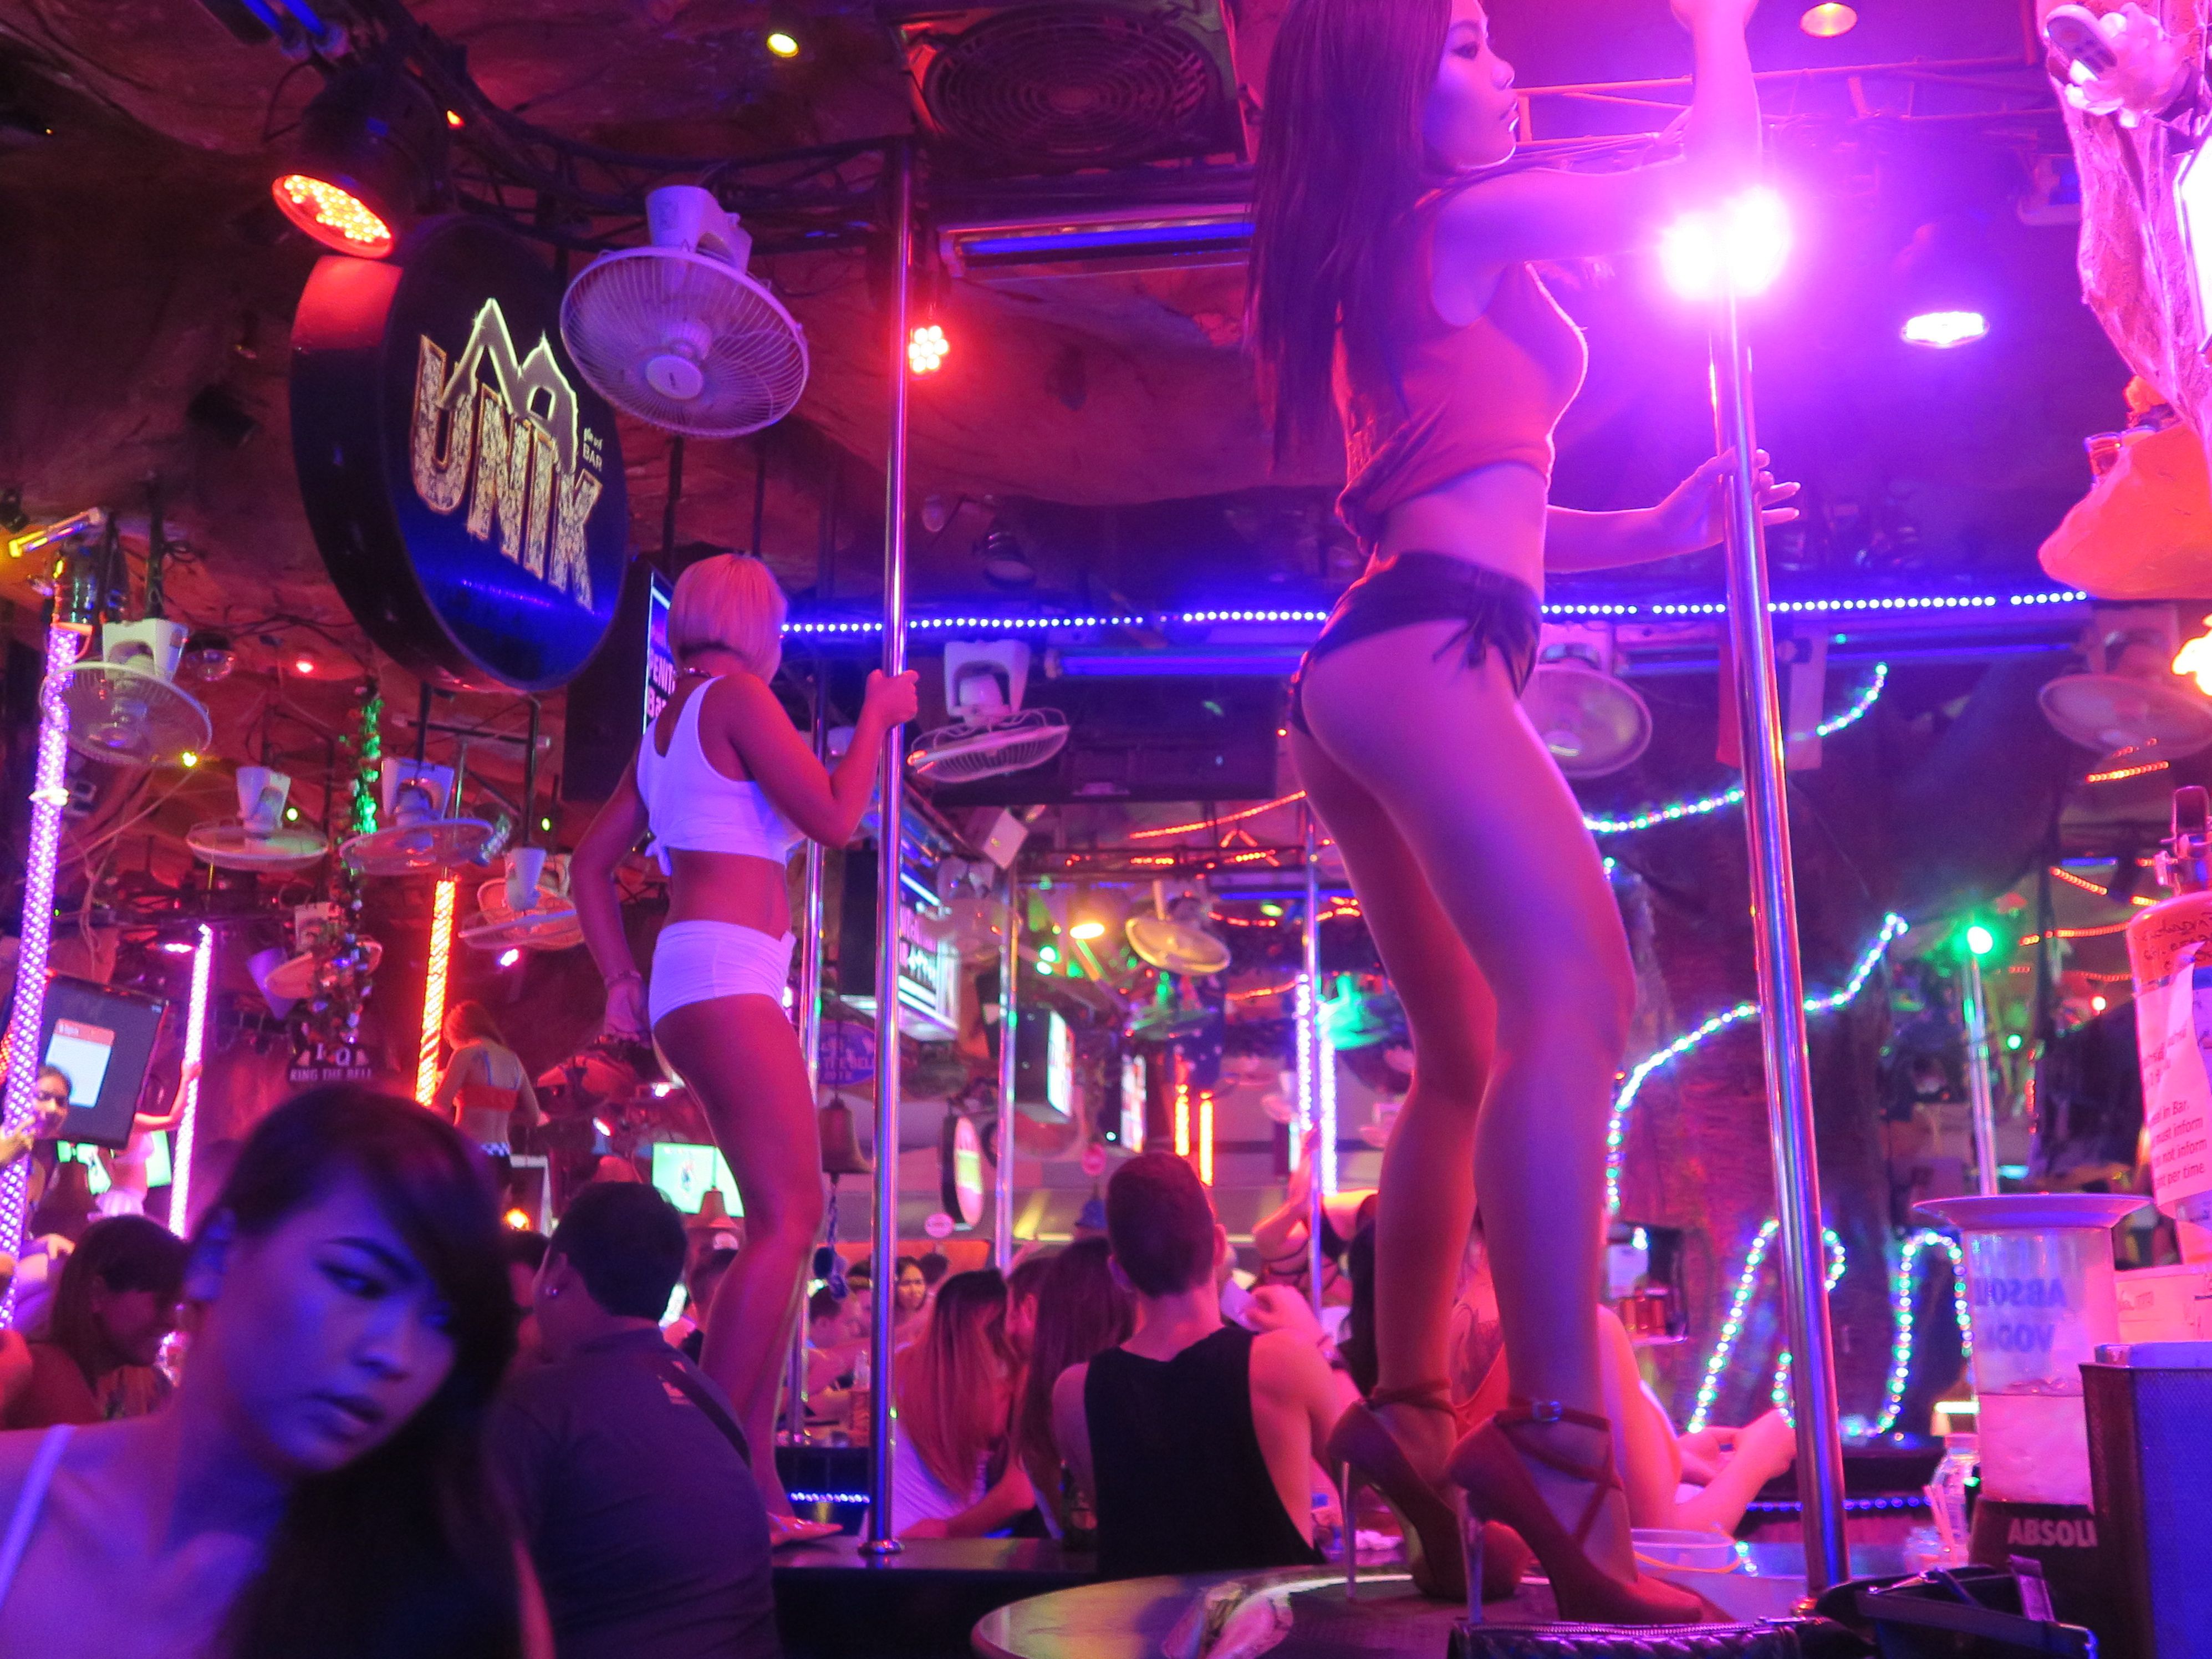 Patong Girls Phuket Bangkok